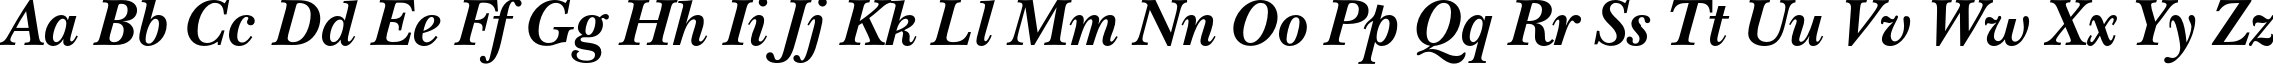 Пример написания английского алфавита шрифтом NewBaskervilleC Bold Italic